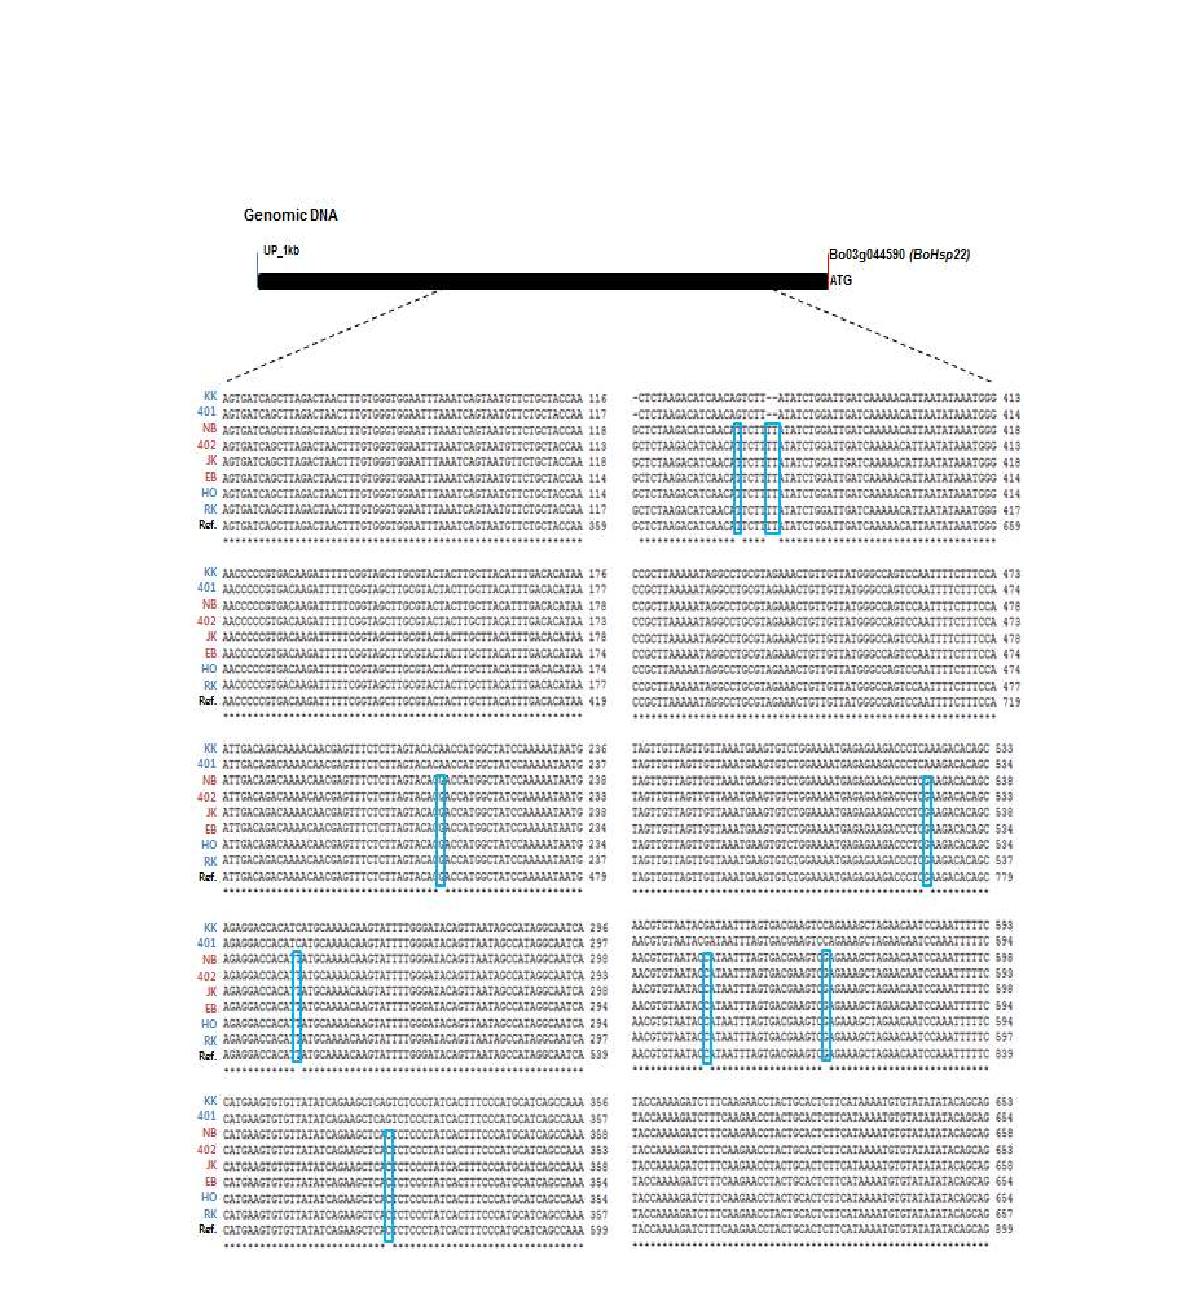 내서성 강/약 8 계통에 대한 BoHSP22 유전자의 1 kb 프로모터 영역 염기서열 비교분석